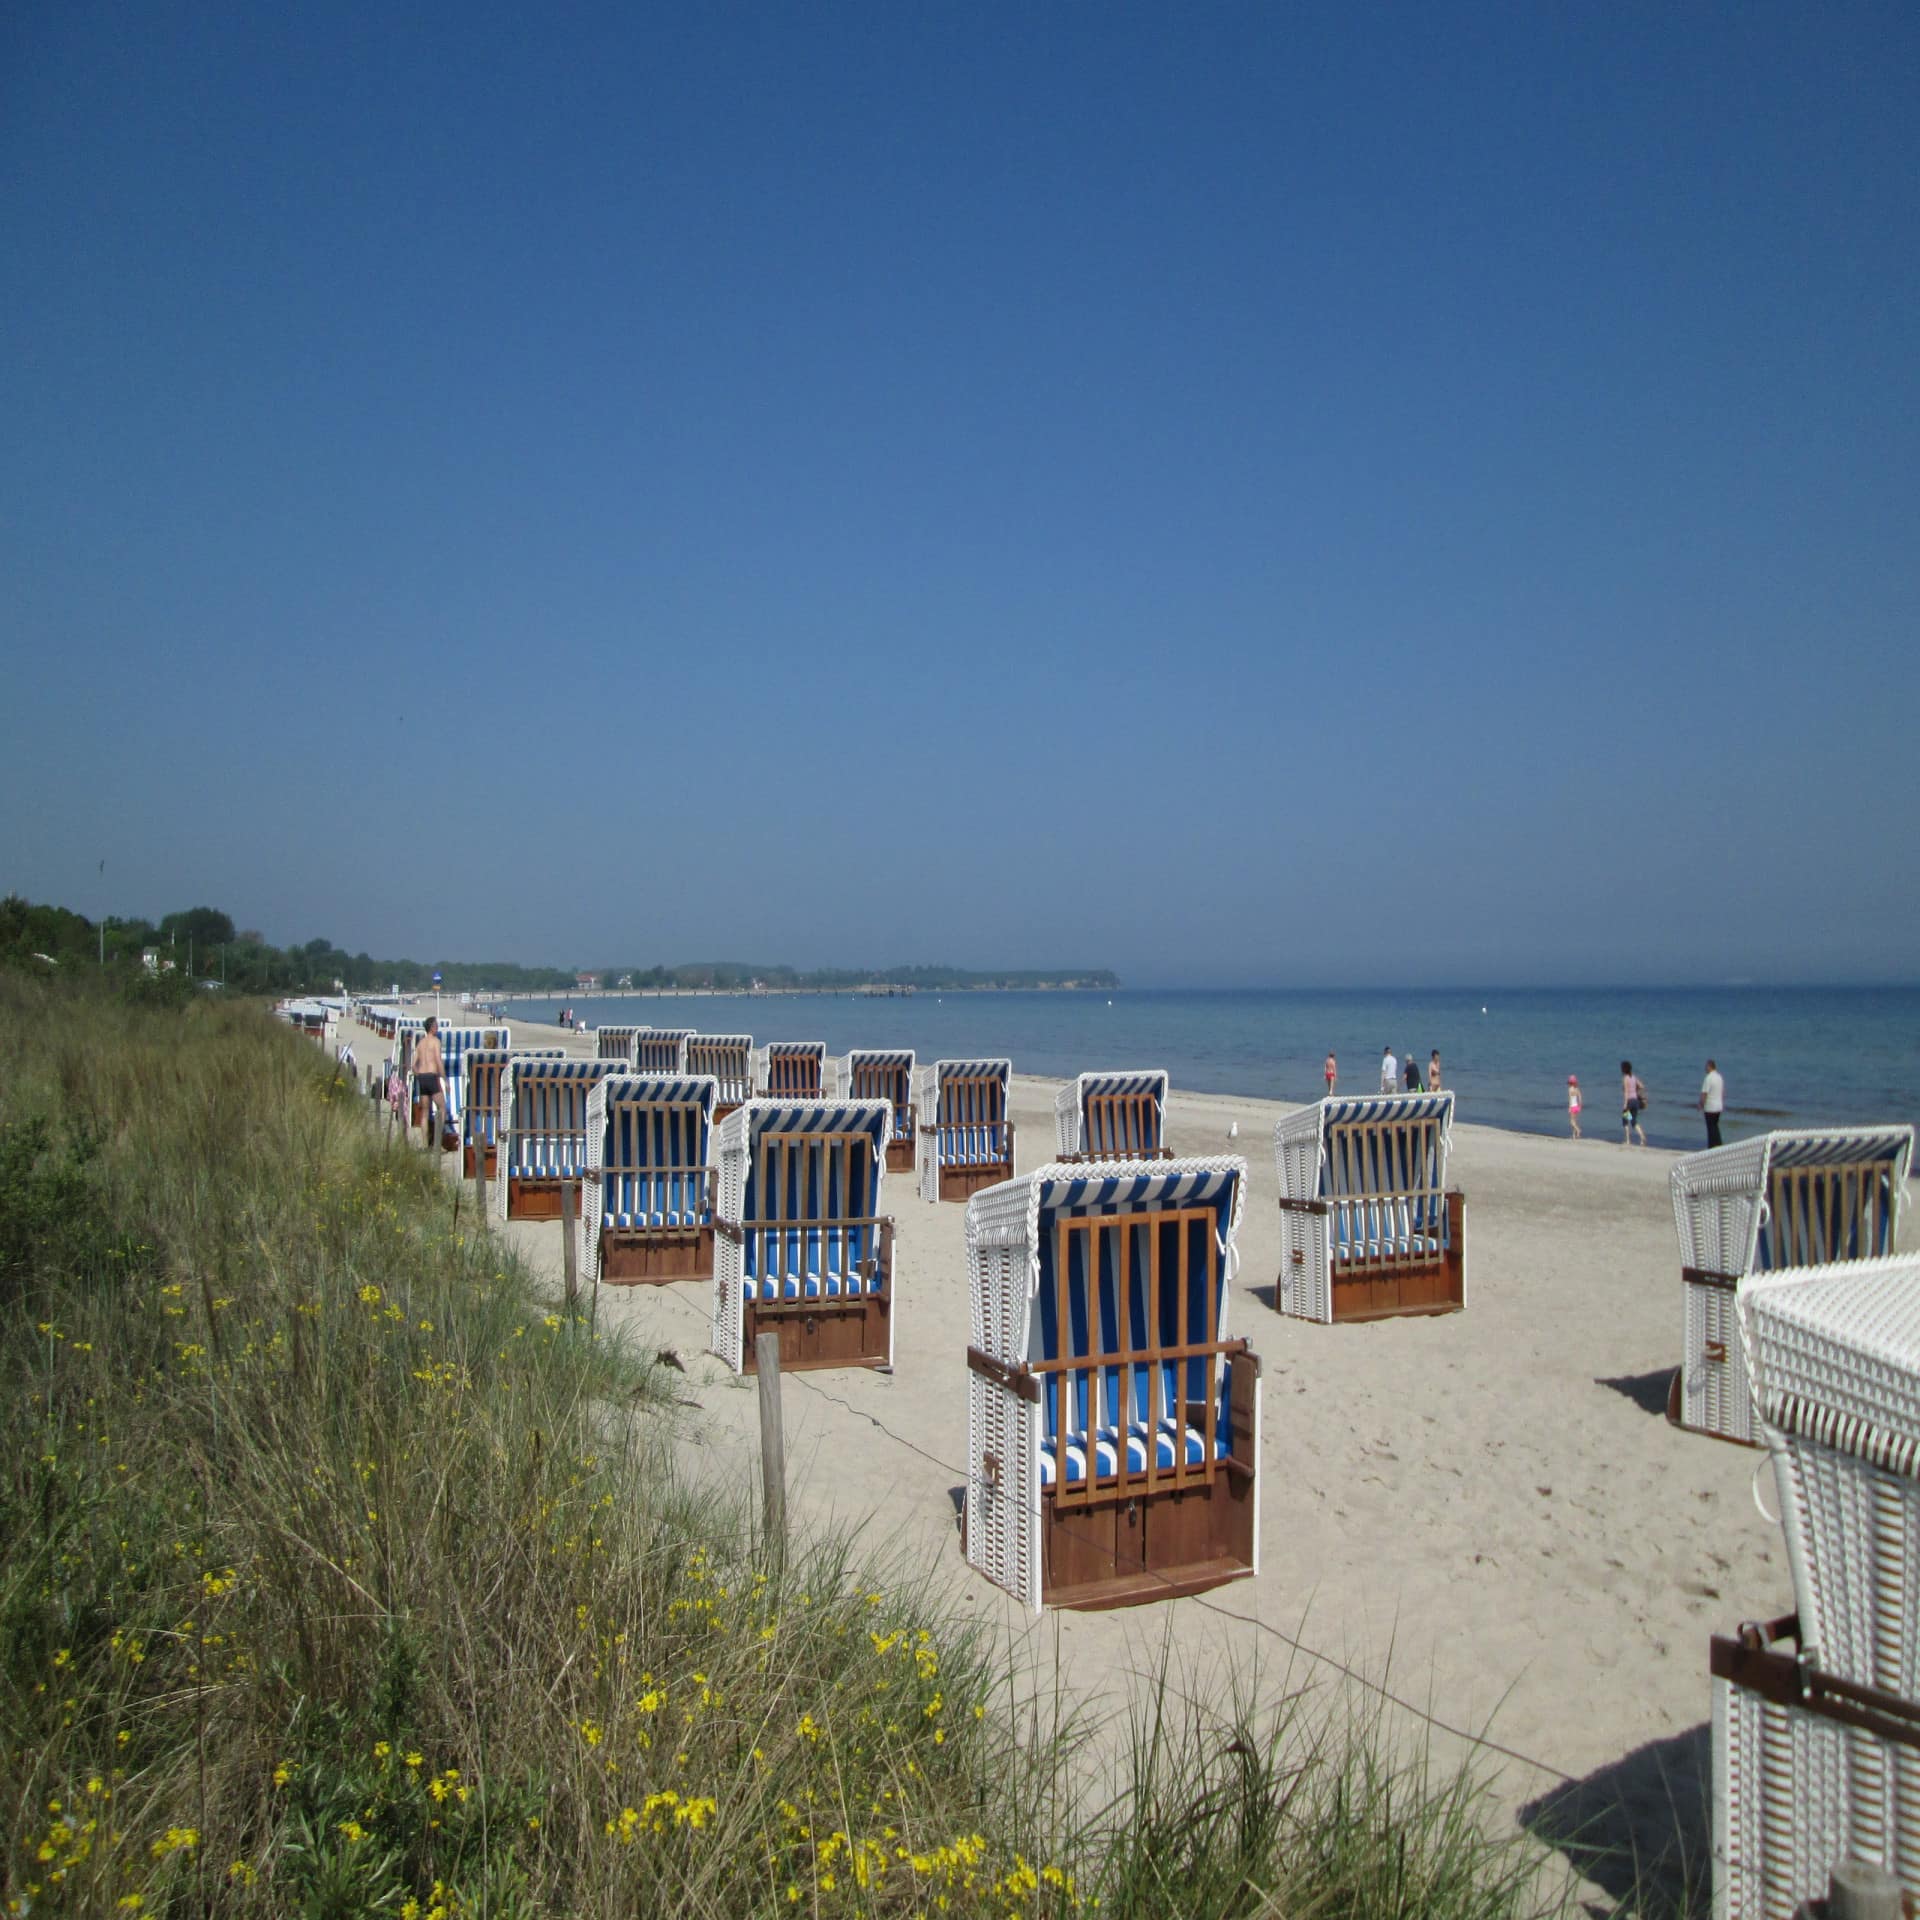 Blau-weiß gestreifte Strandkörbe, eine Düne und Spaziergänger am Strand.